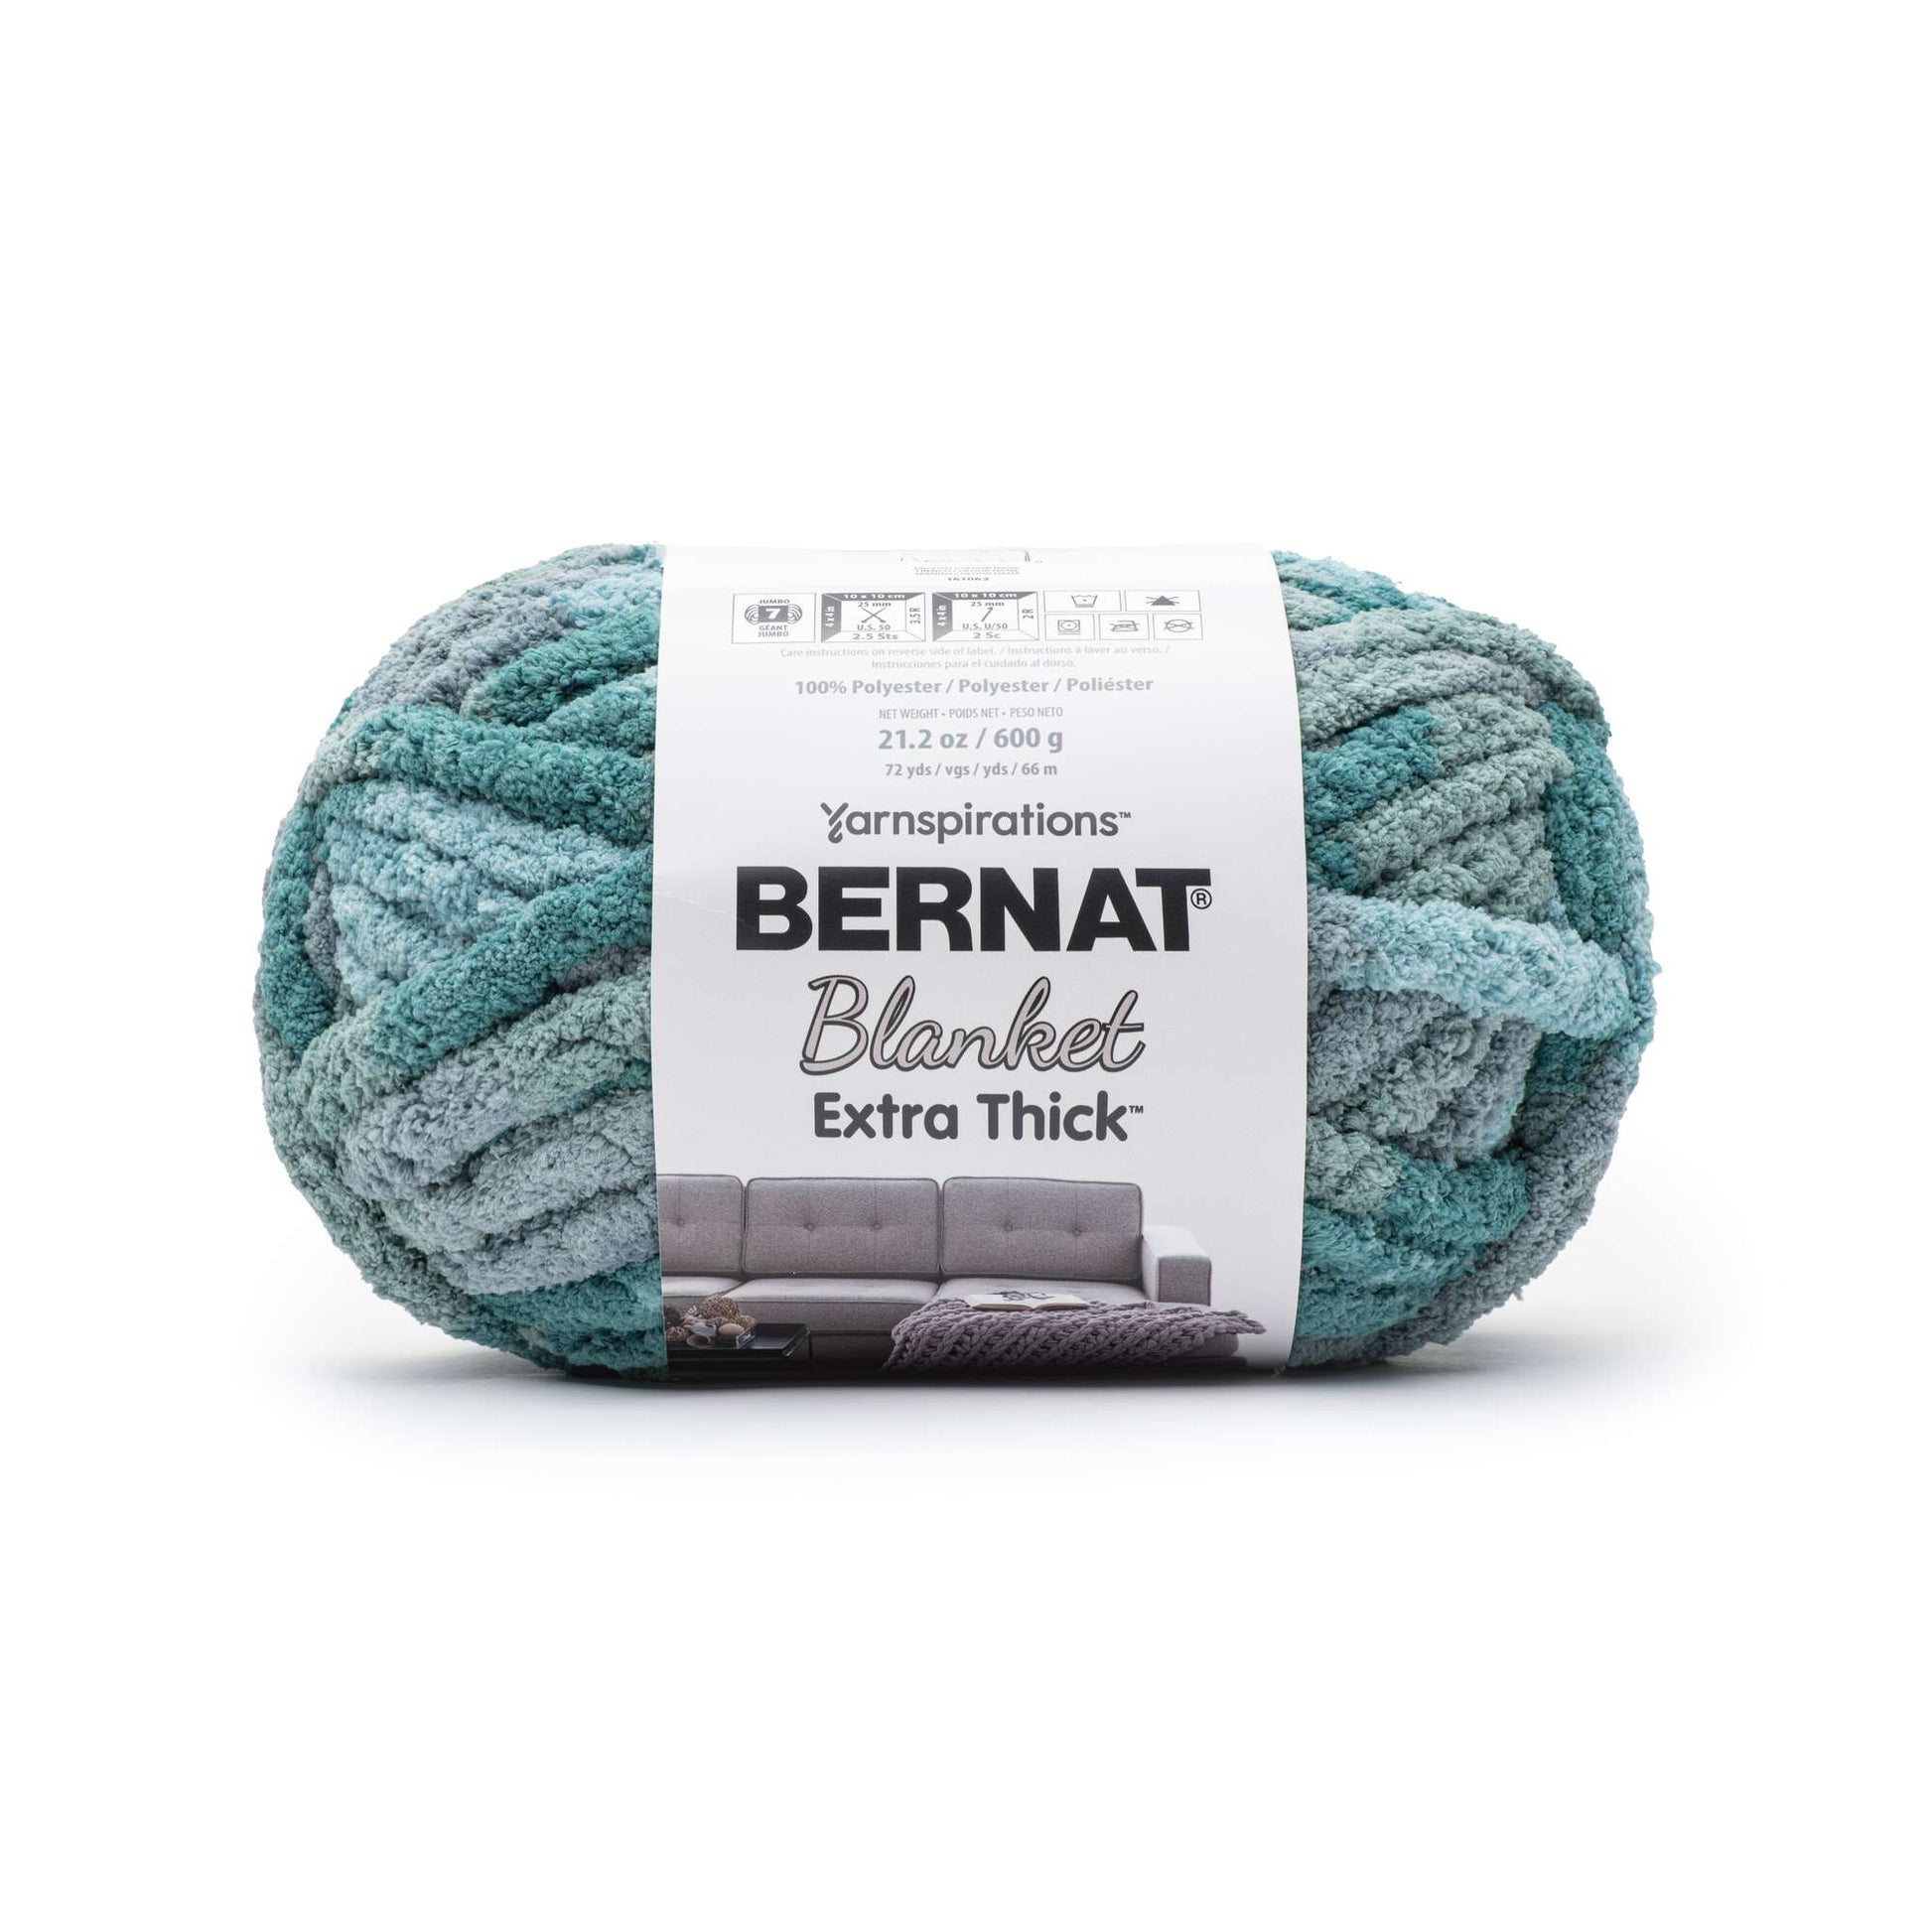 Bernat Blanket Extra Thick Yarn (600g/21.2oz)